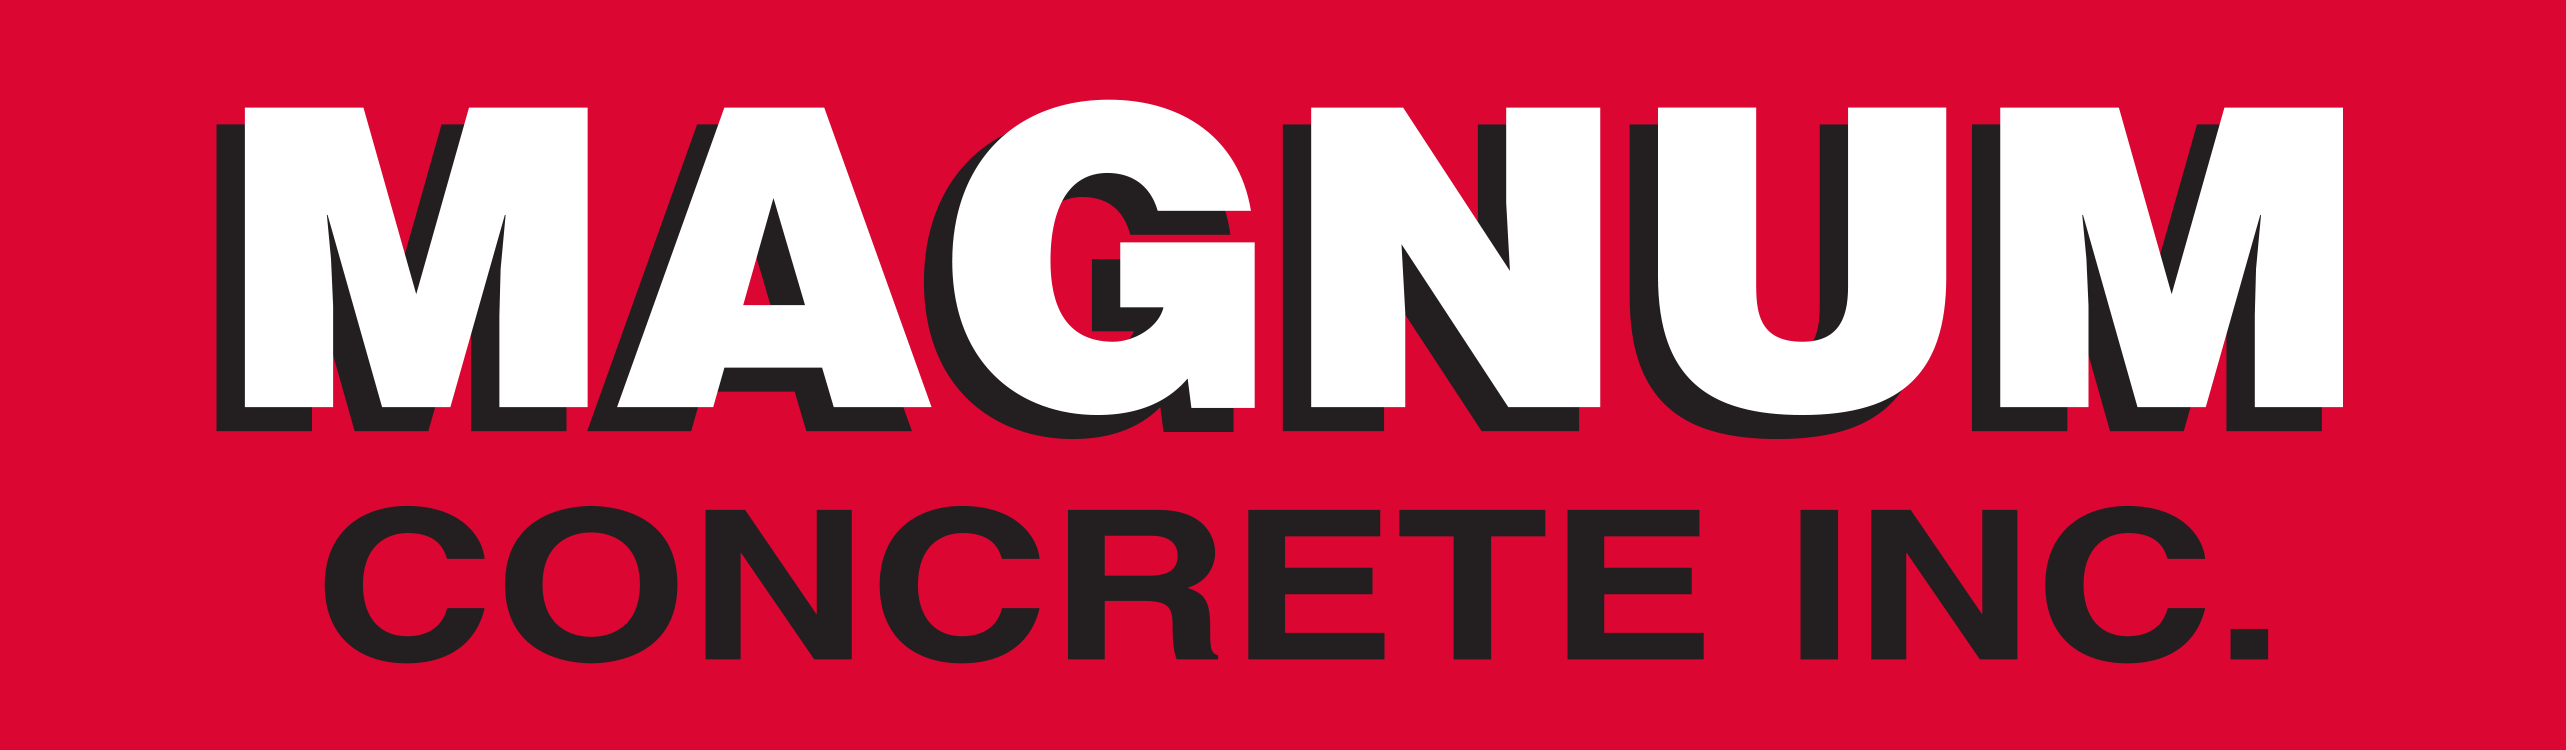 Magnum Concrete Inc.